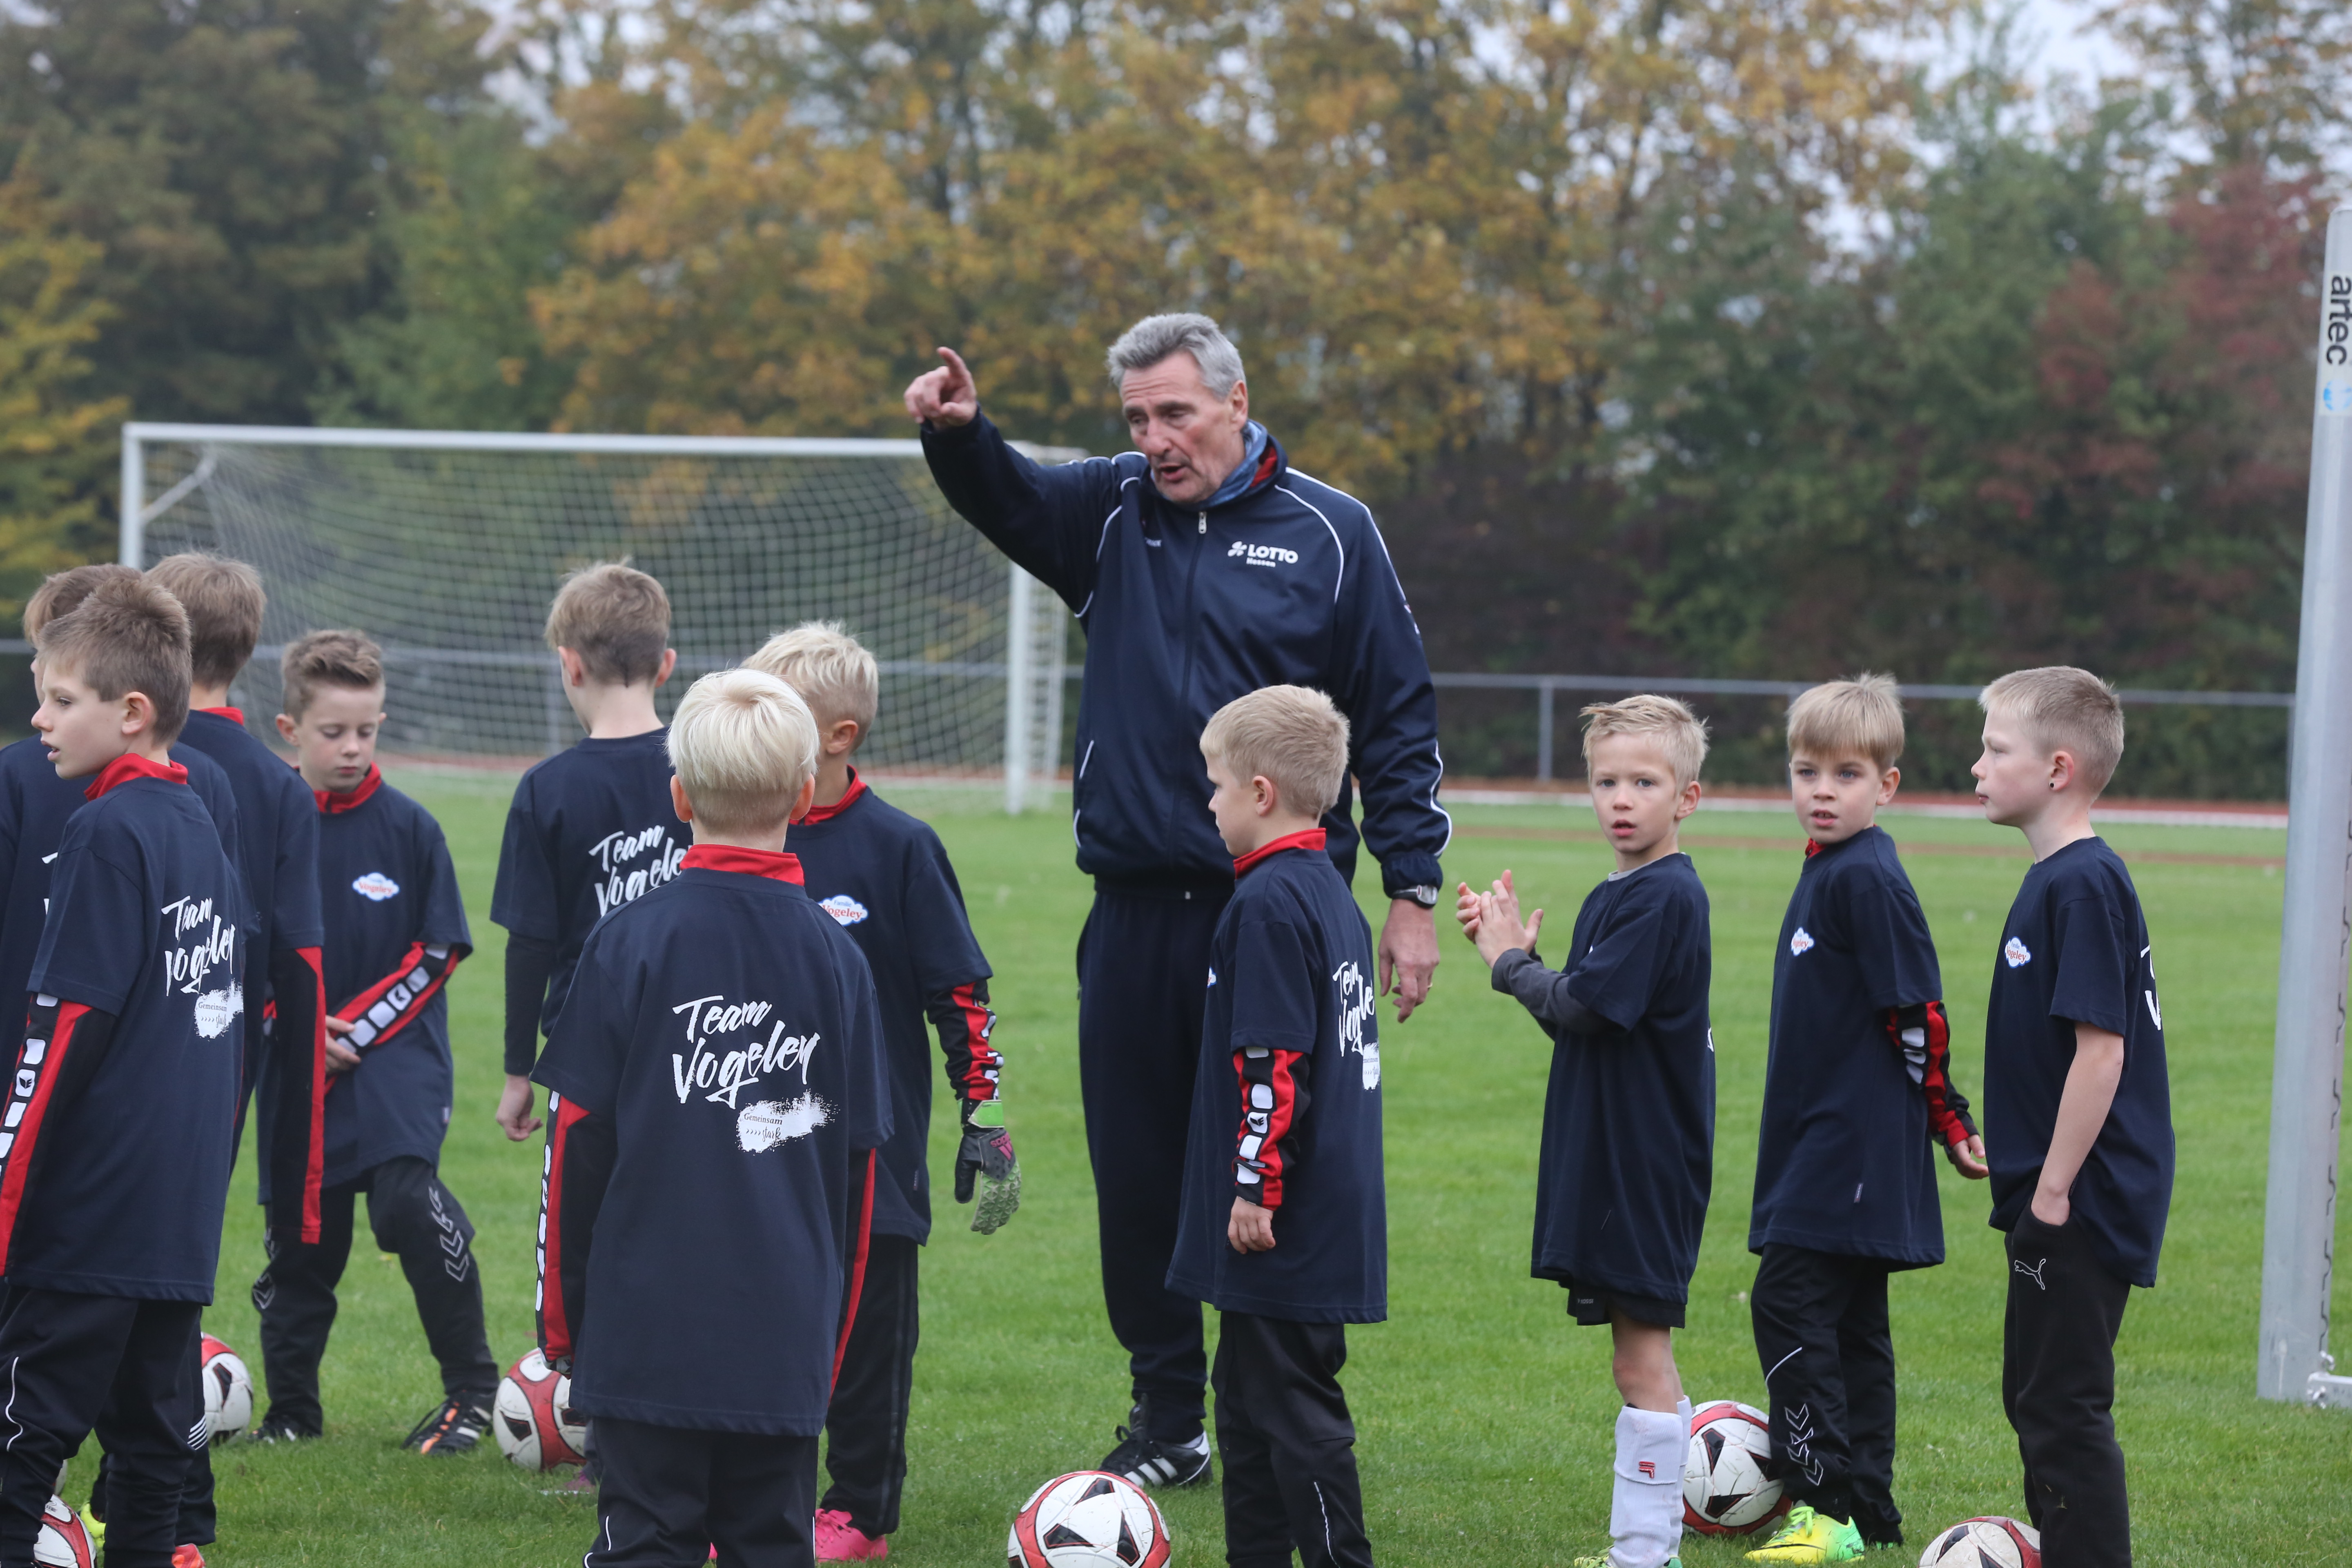 Kicken wie die Profis: In der Fußballschule von Dieter Müller lernt der Nachwuchs neben Fußball vor allem Repsekt und Teamgeist. Foto: Vogeley